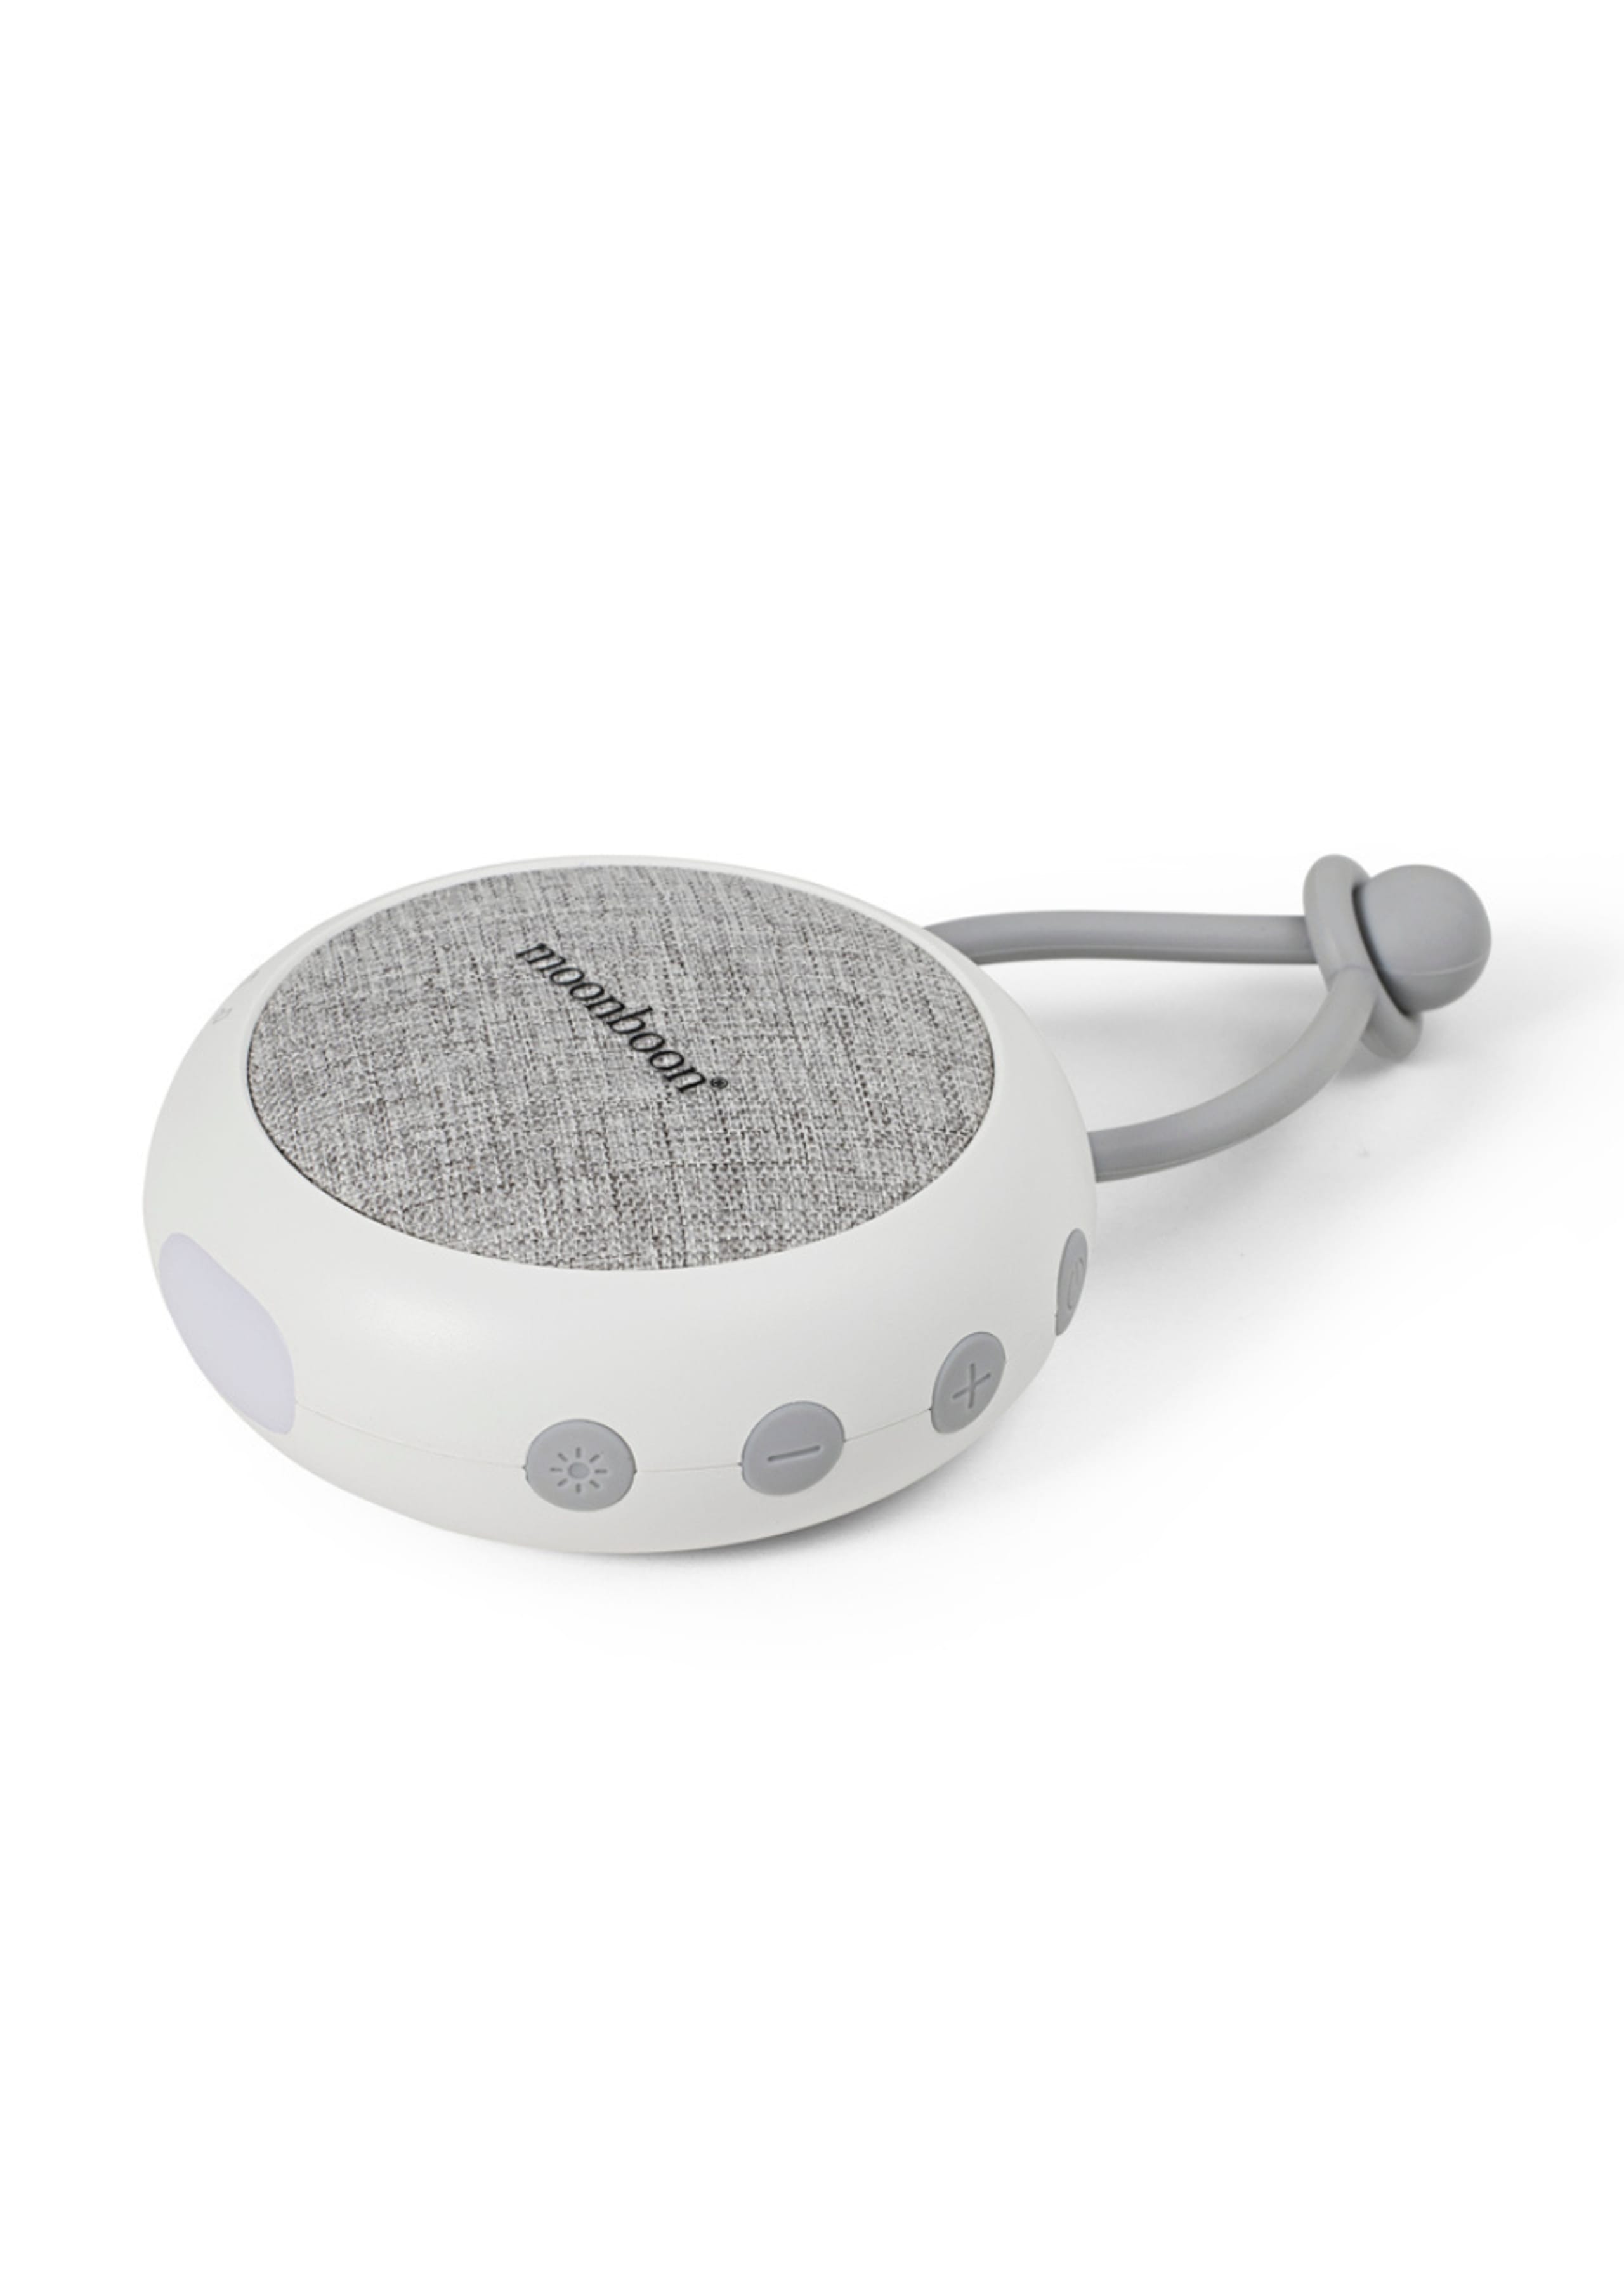 Moonboon - Lautsprecher - White Noise Speaker - White cream